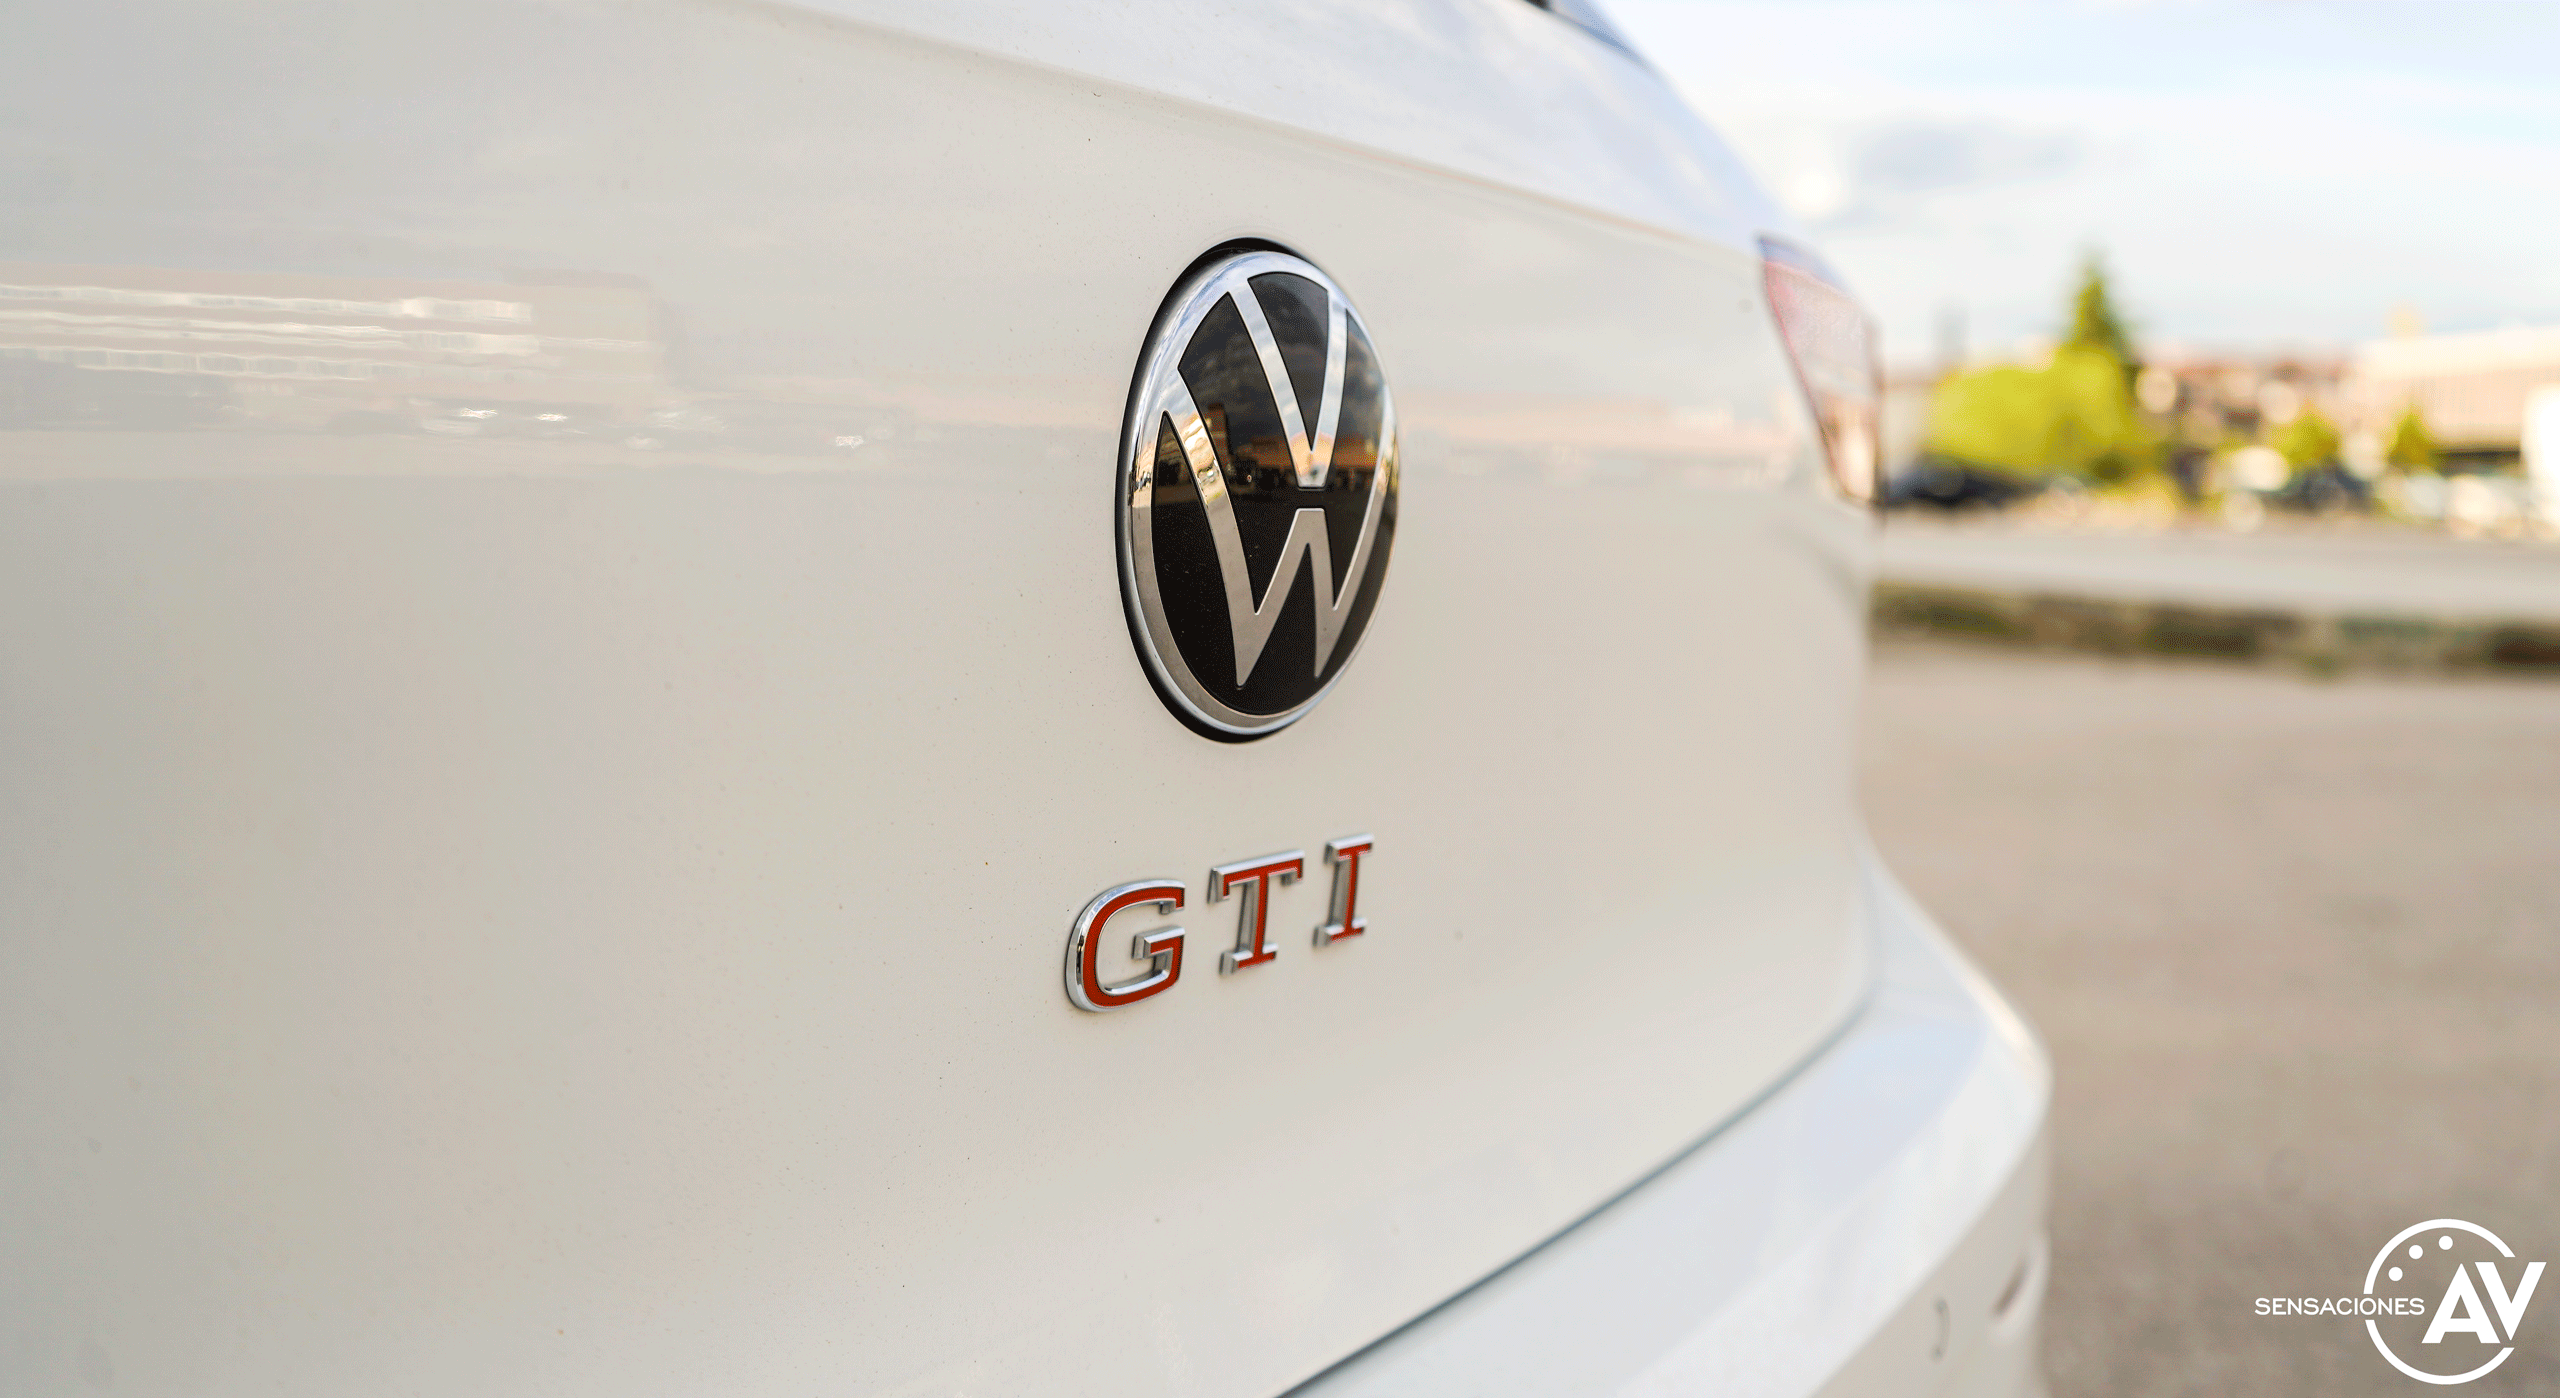 Logo GTI maletero Volkswagen Golf GTI - Prueba Volkswagen Golf 8 GTI 245 CV DSG: Una bomba divertida, polivalente y racional